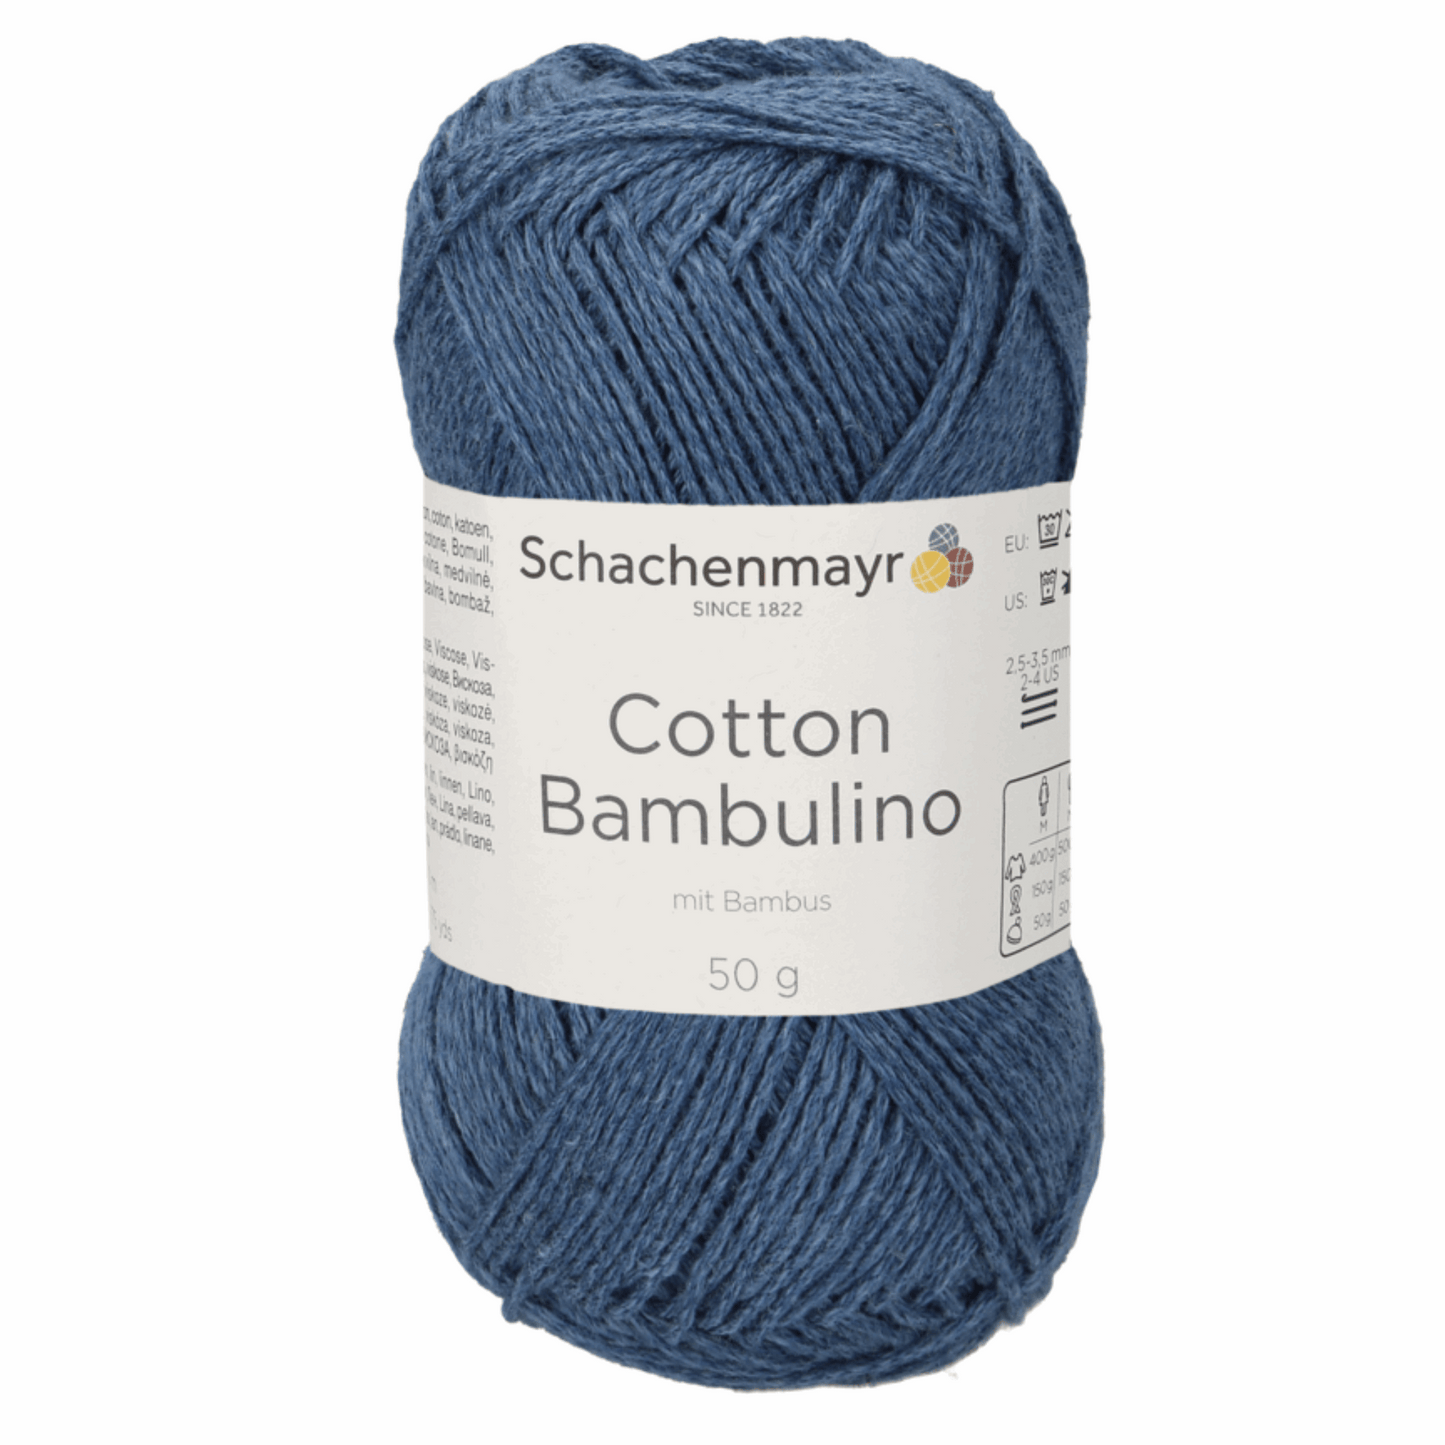 Schachenmayr Cotton Bambulino 50g, 90403, Farbe Indigo 50